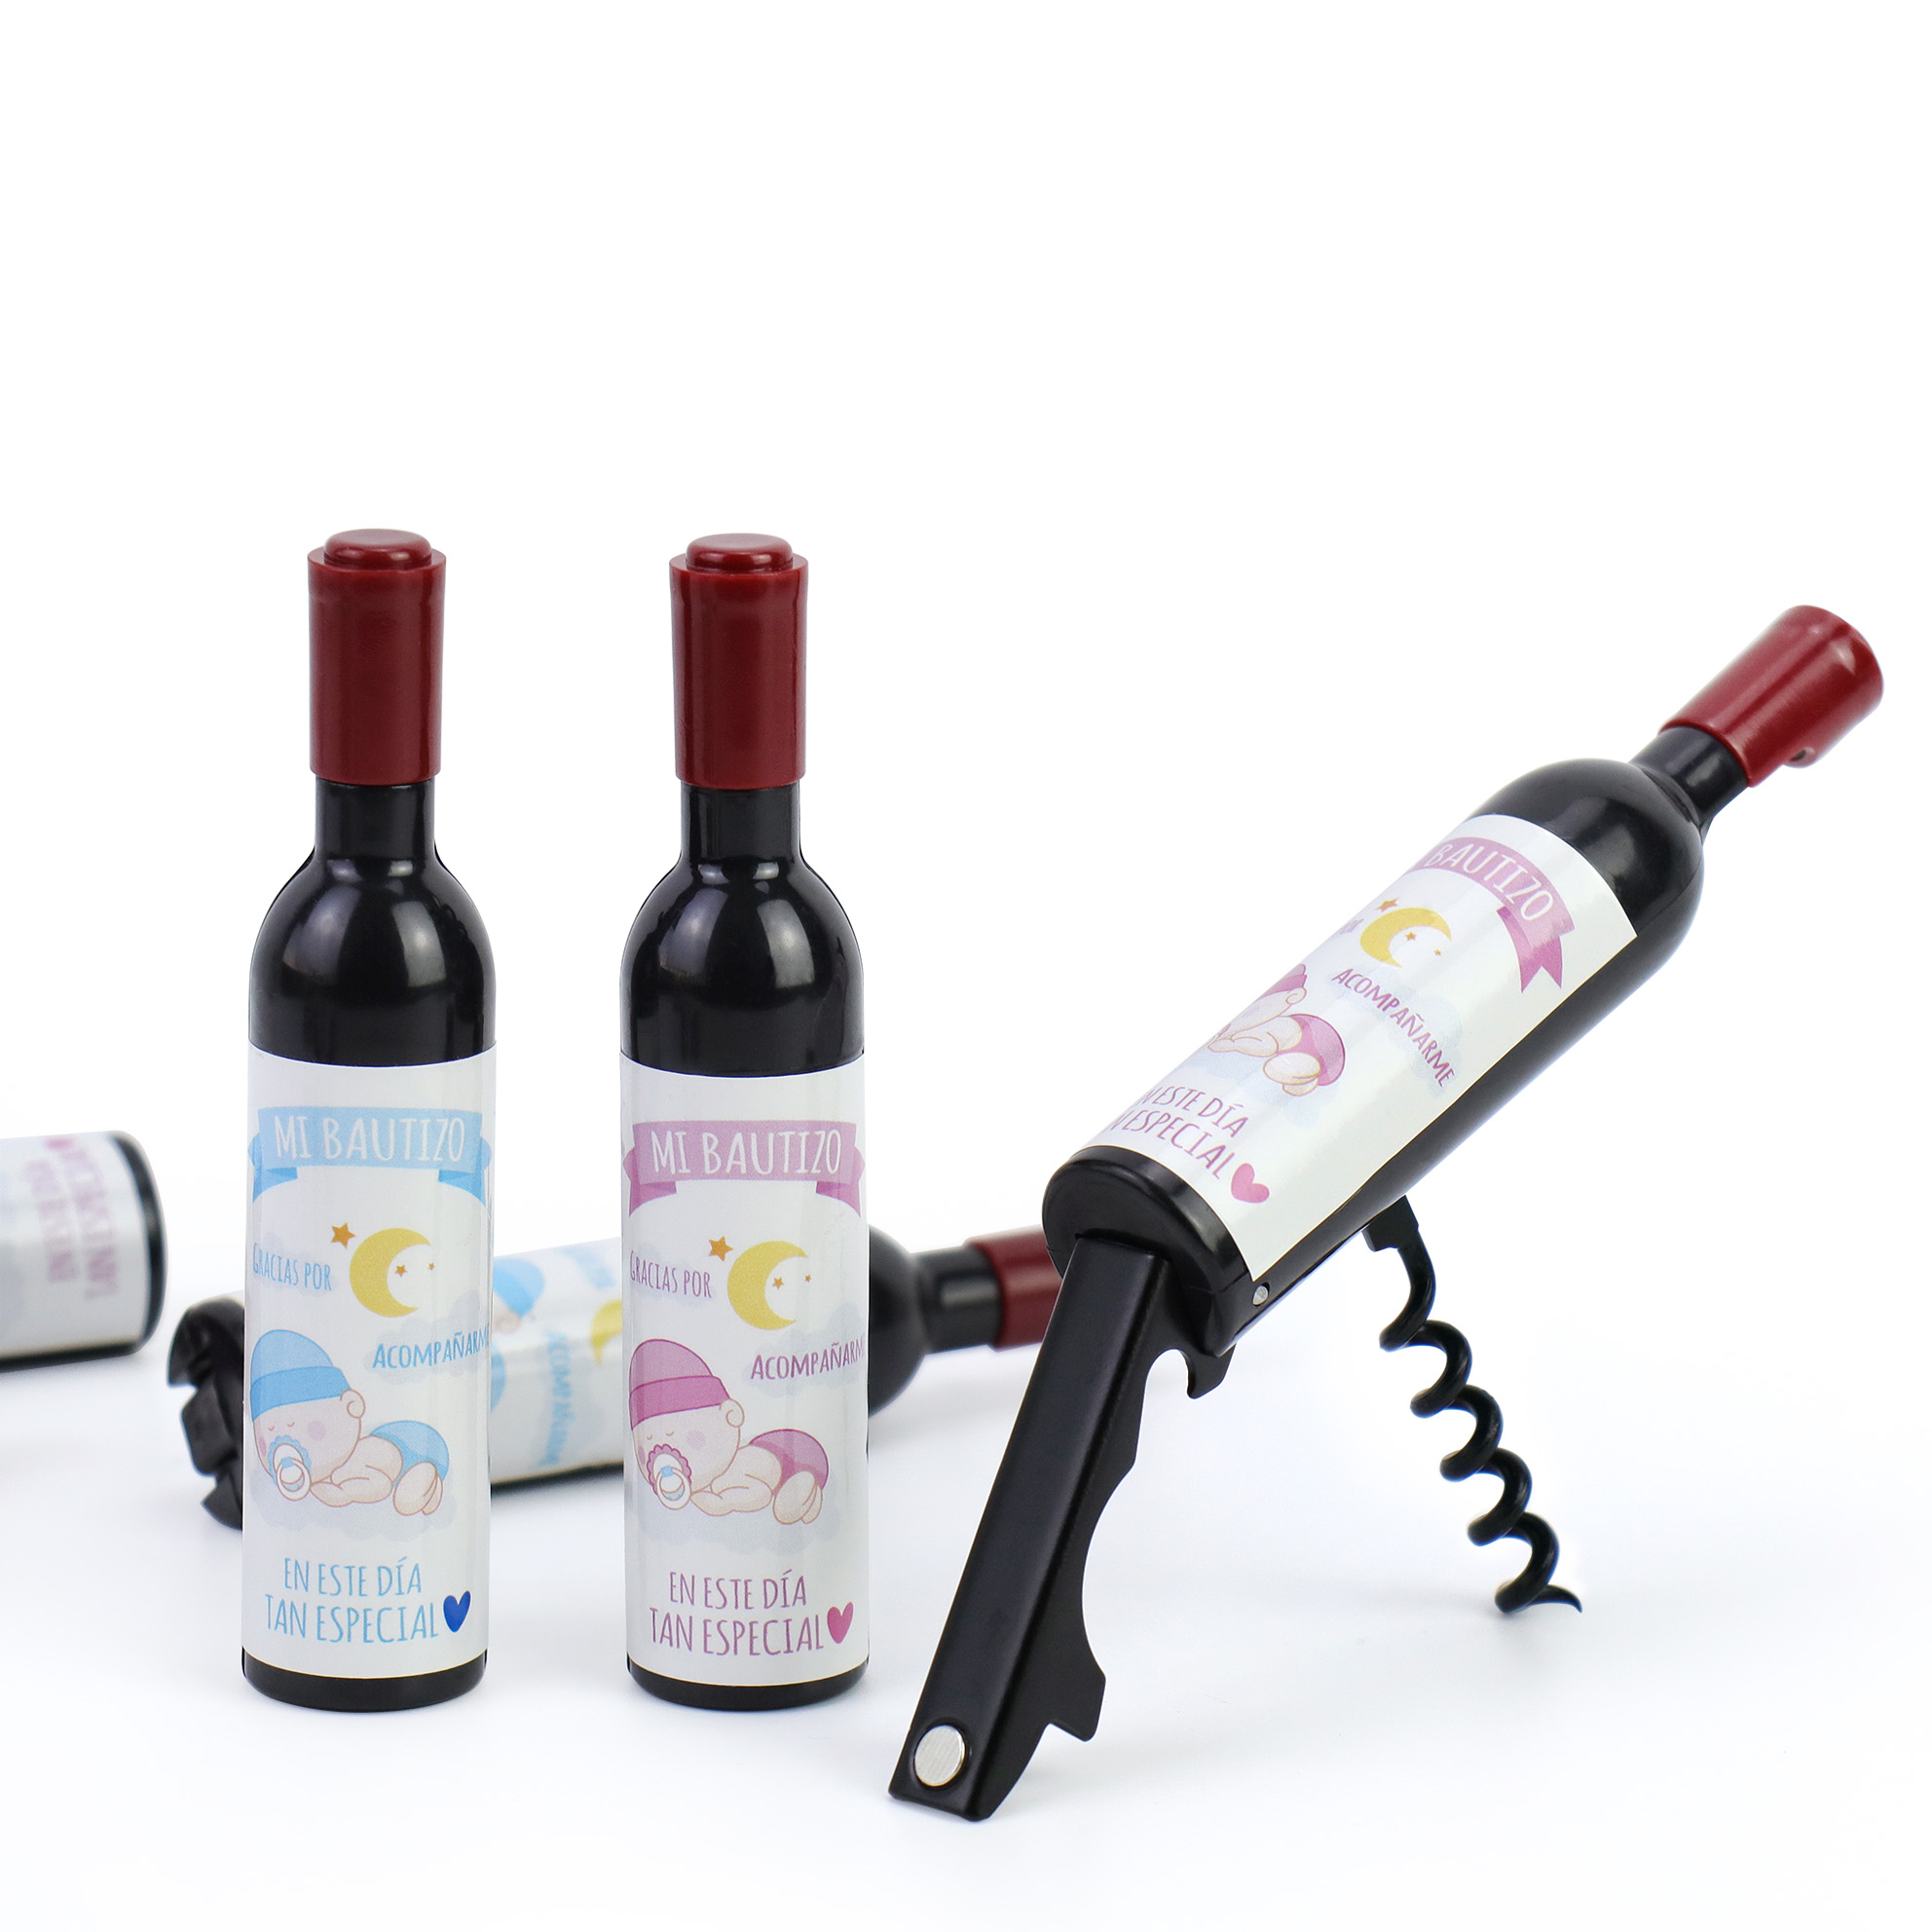 Sacacorchos y Abridor Botella de Vino para Bautizo - Detalles para Bautizos